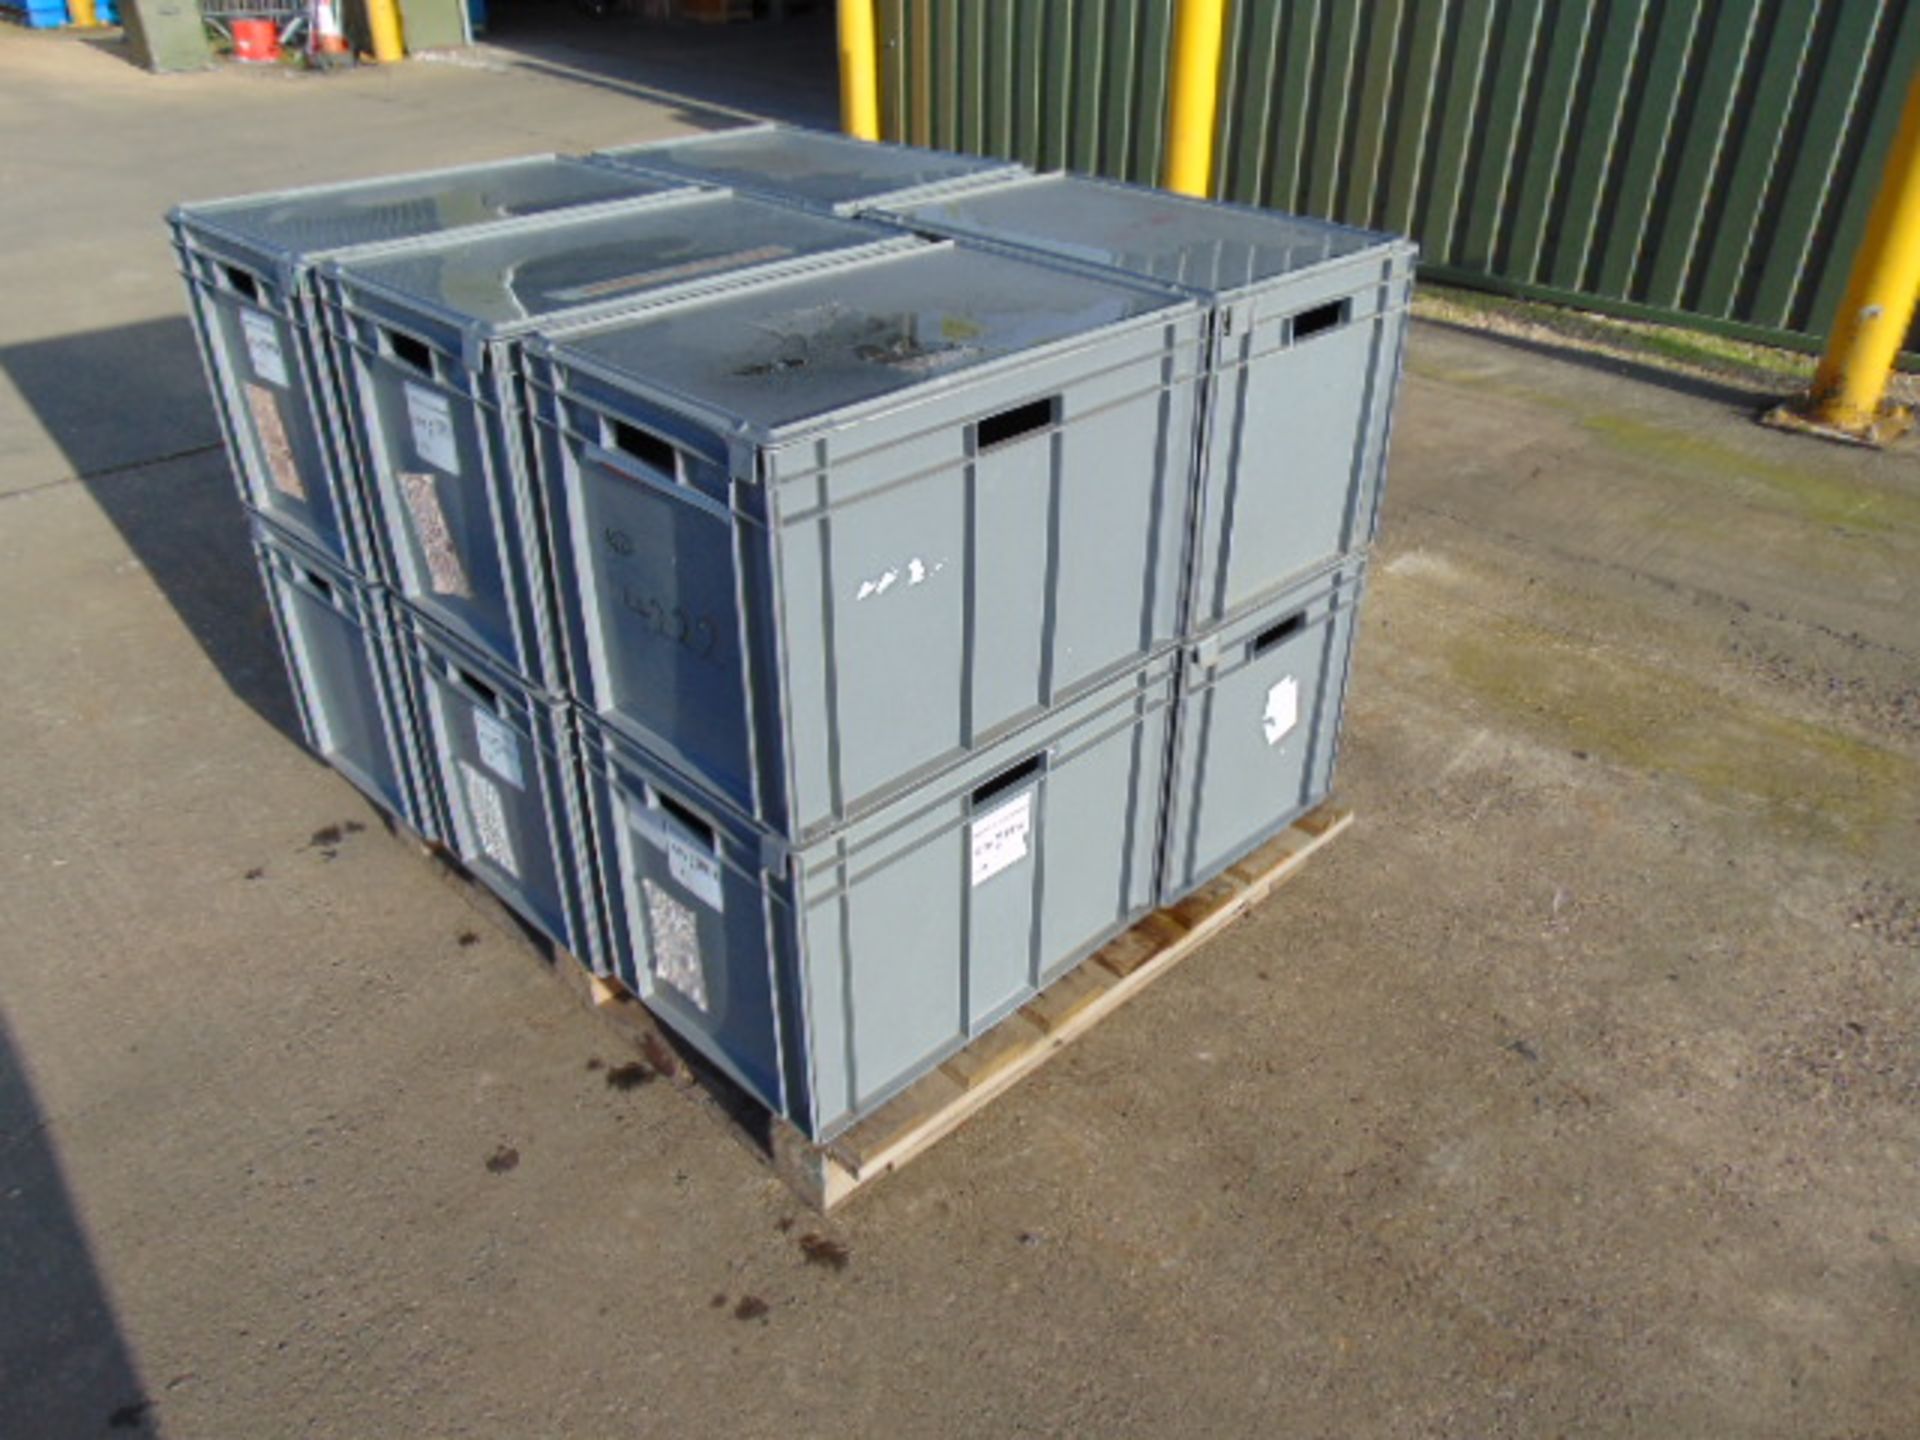 10 x Standard MoD Stackable Storage Boxes c/w Lids